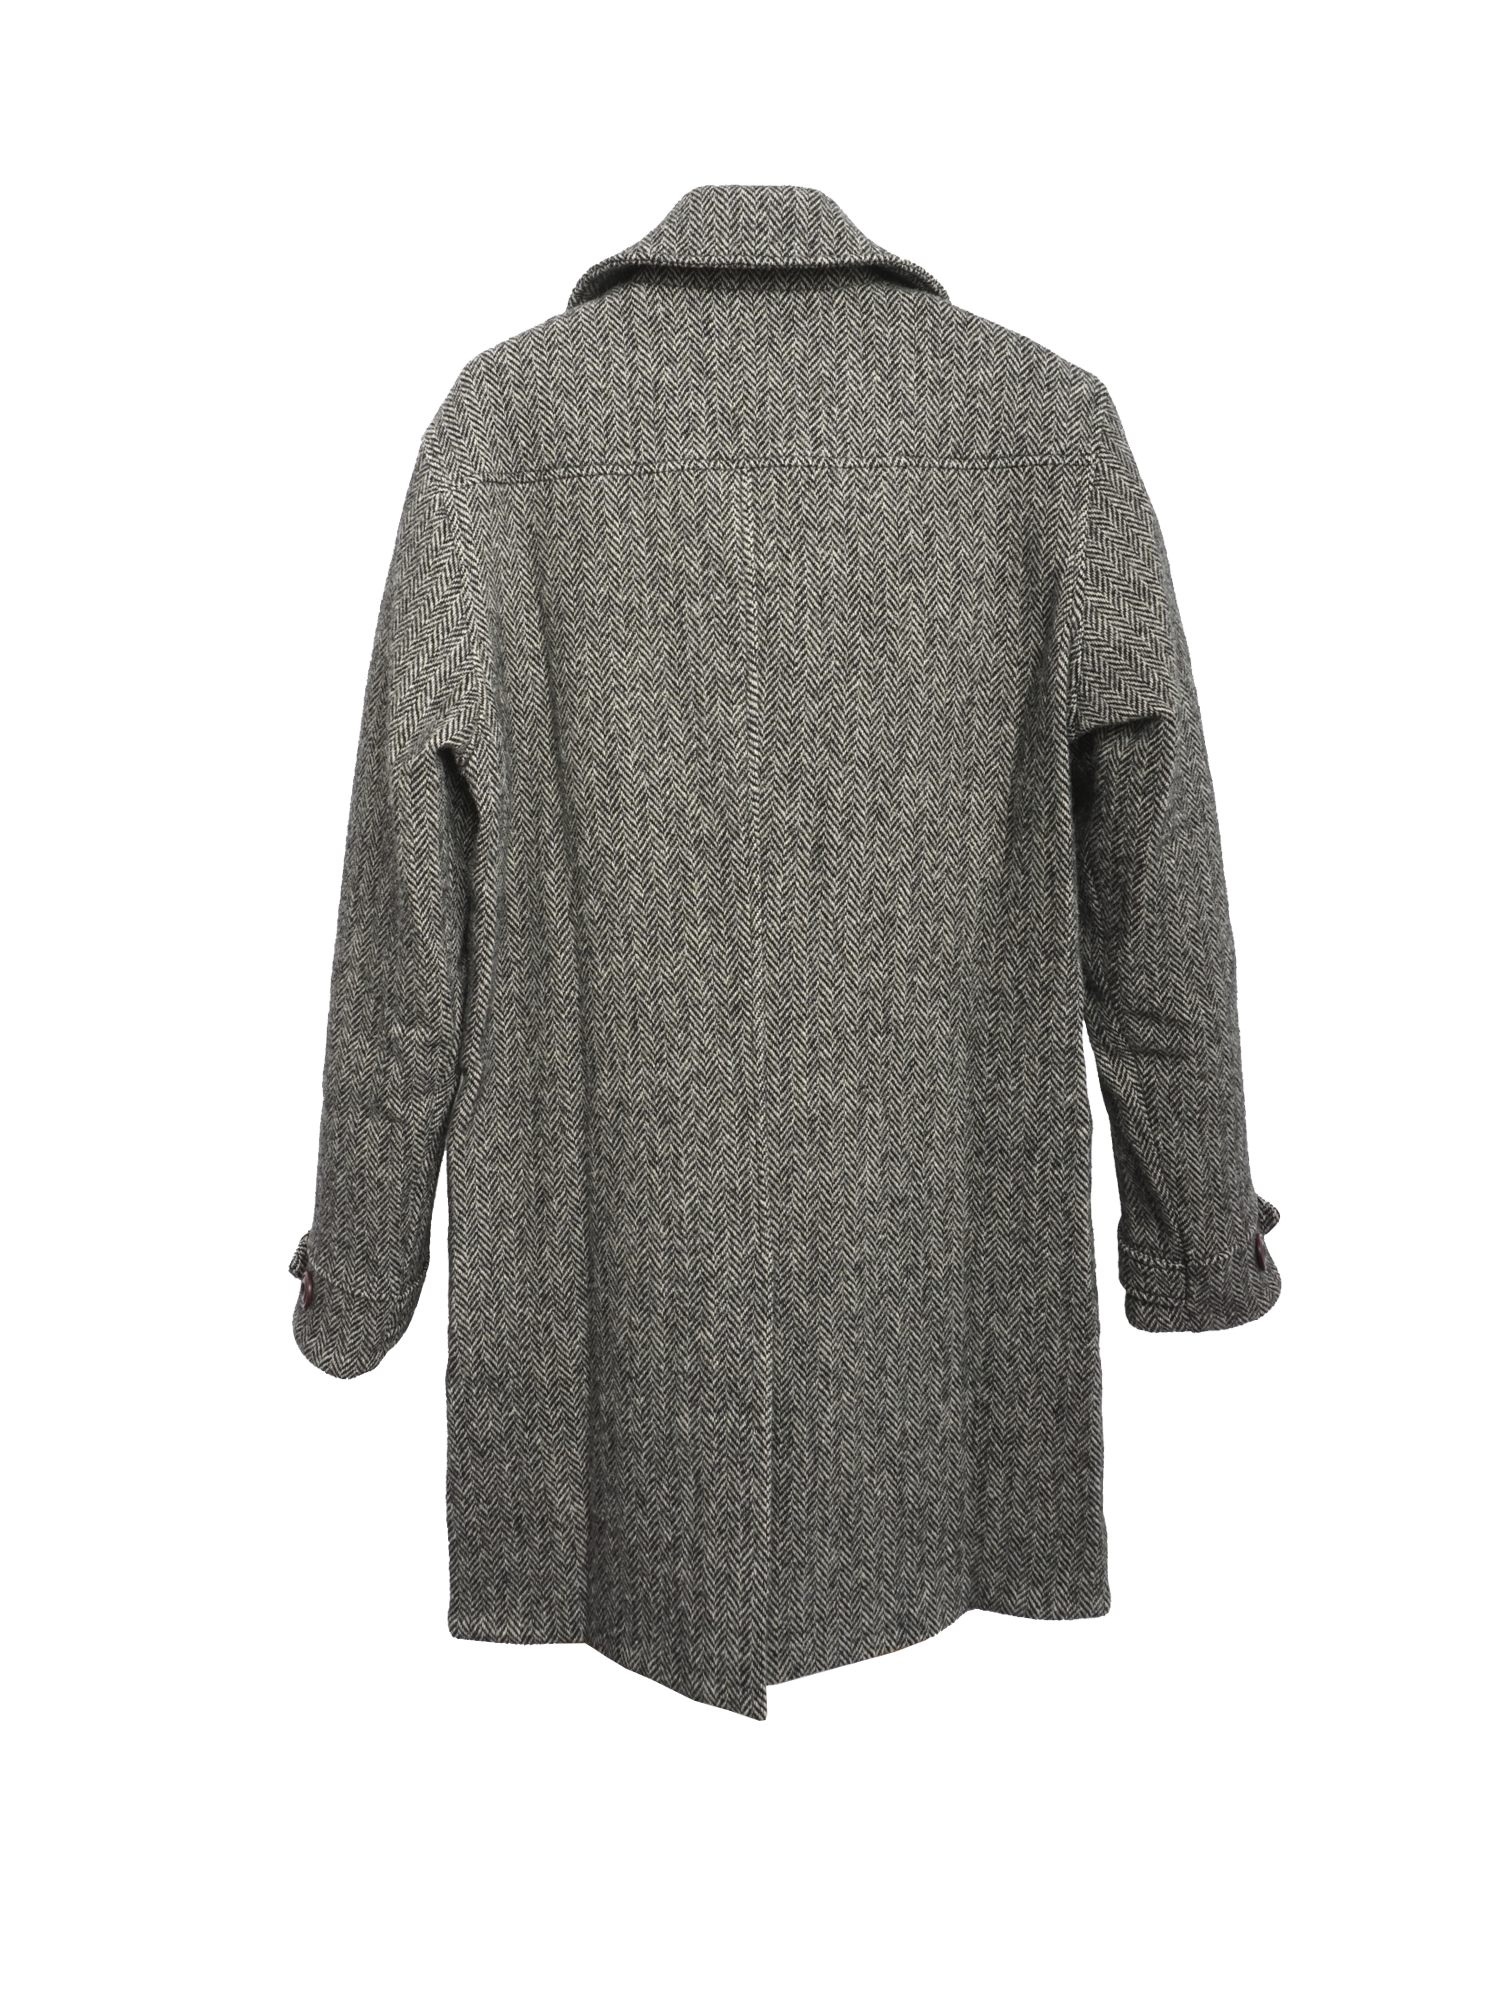 K5501 AJAX Mens luxury wool coat